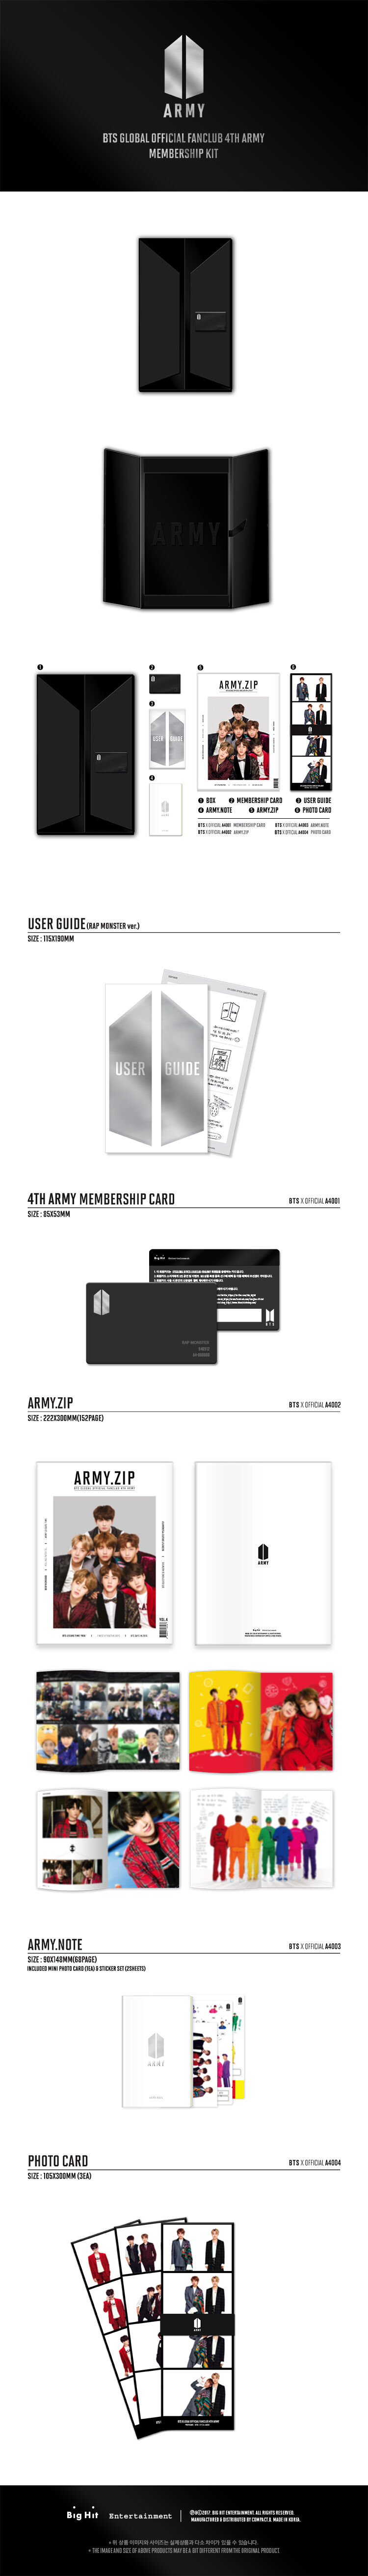 BTS 4th membership kit